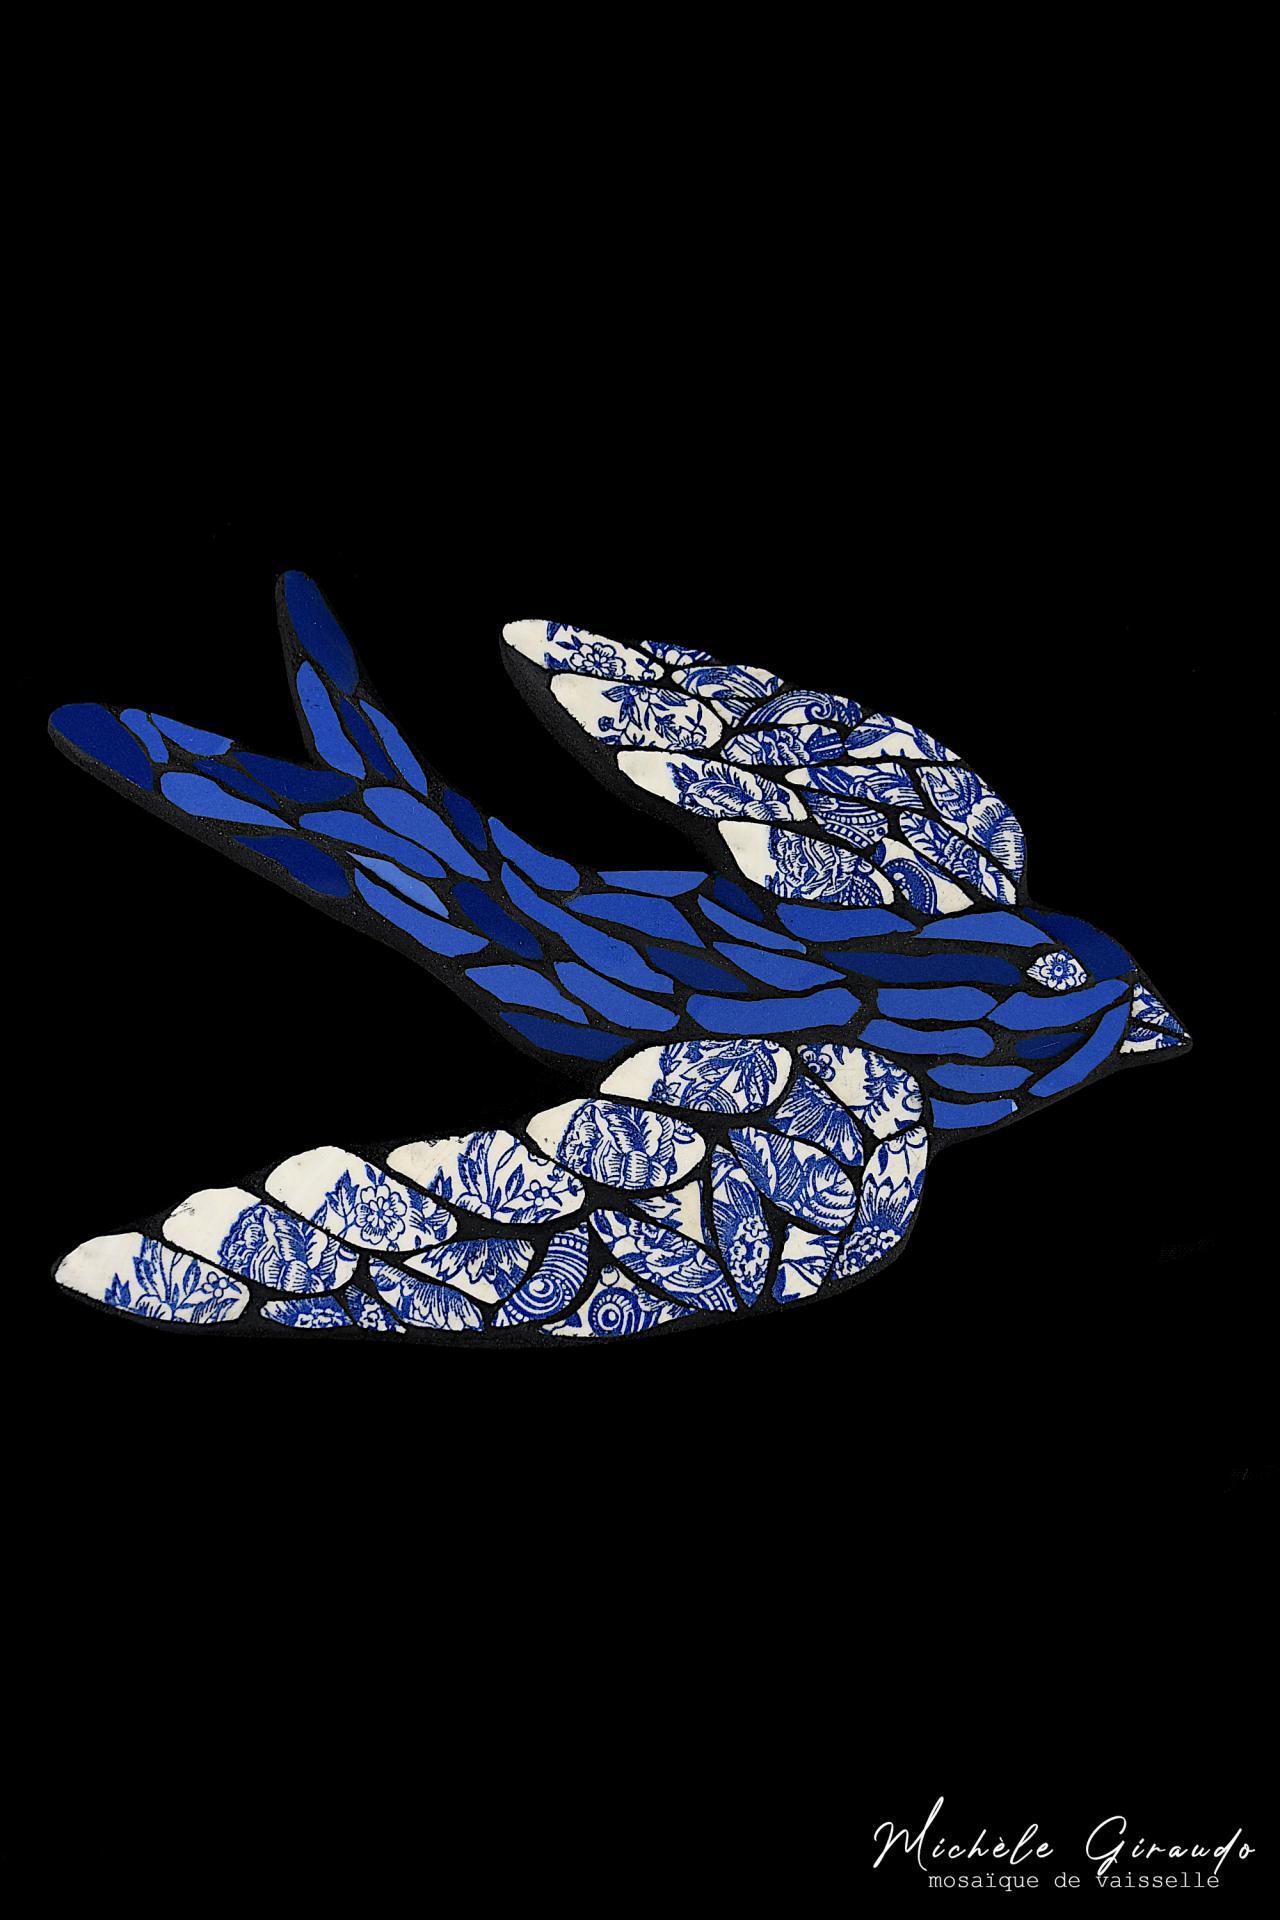 Hirondelle bleu mosaique de vaisselle par michele giraudo